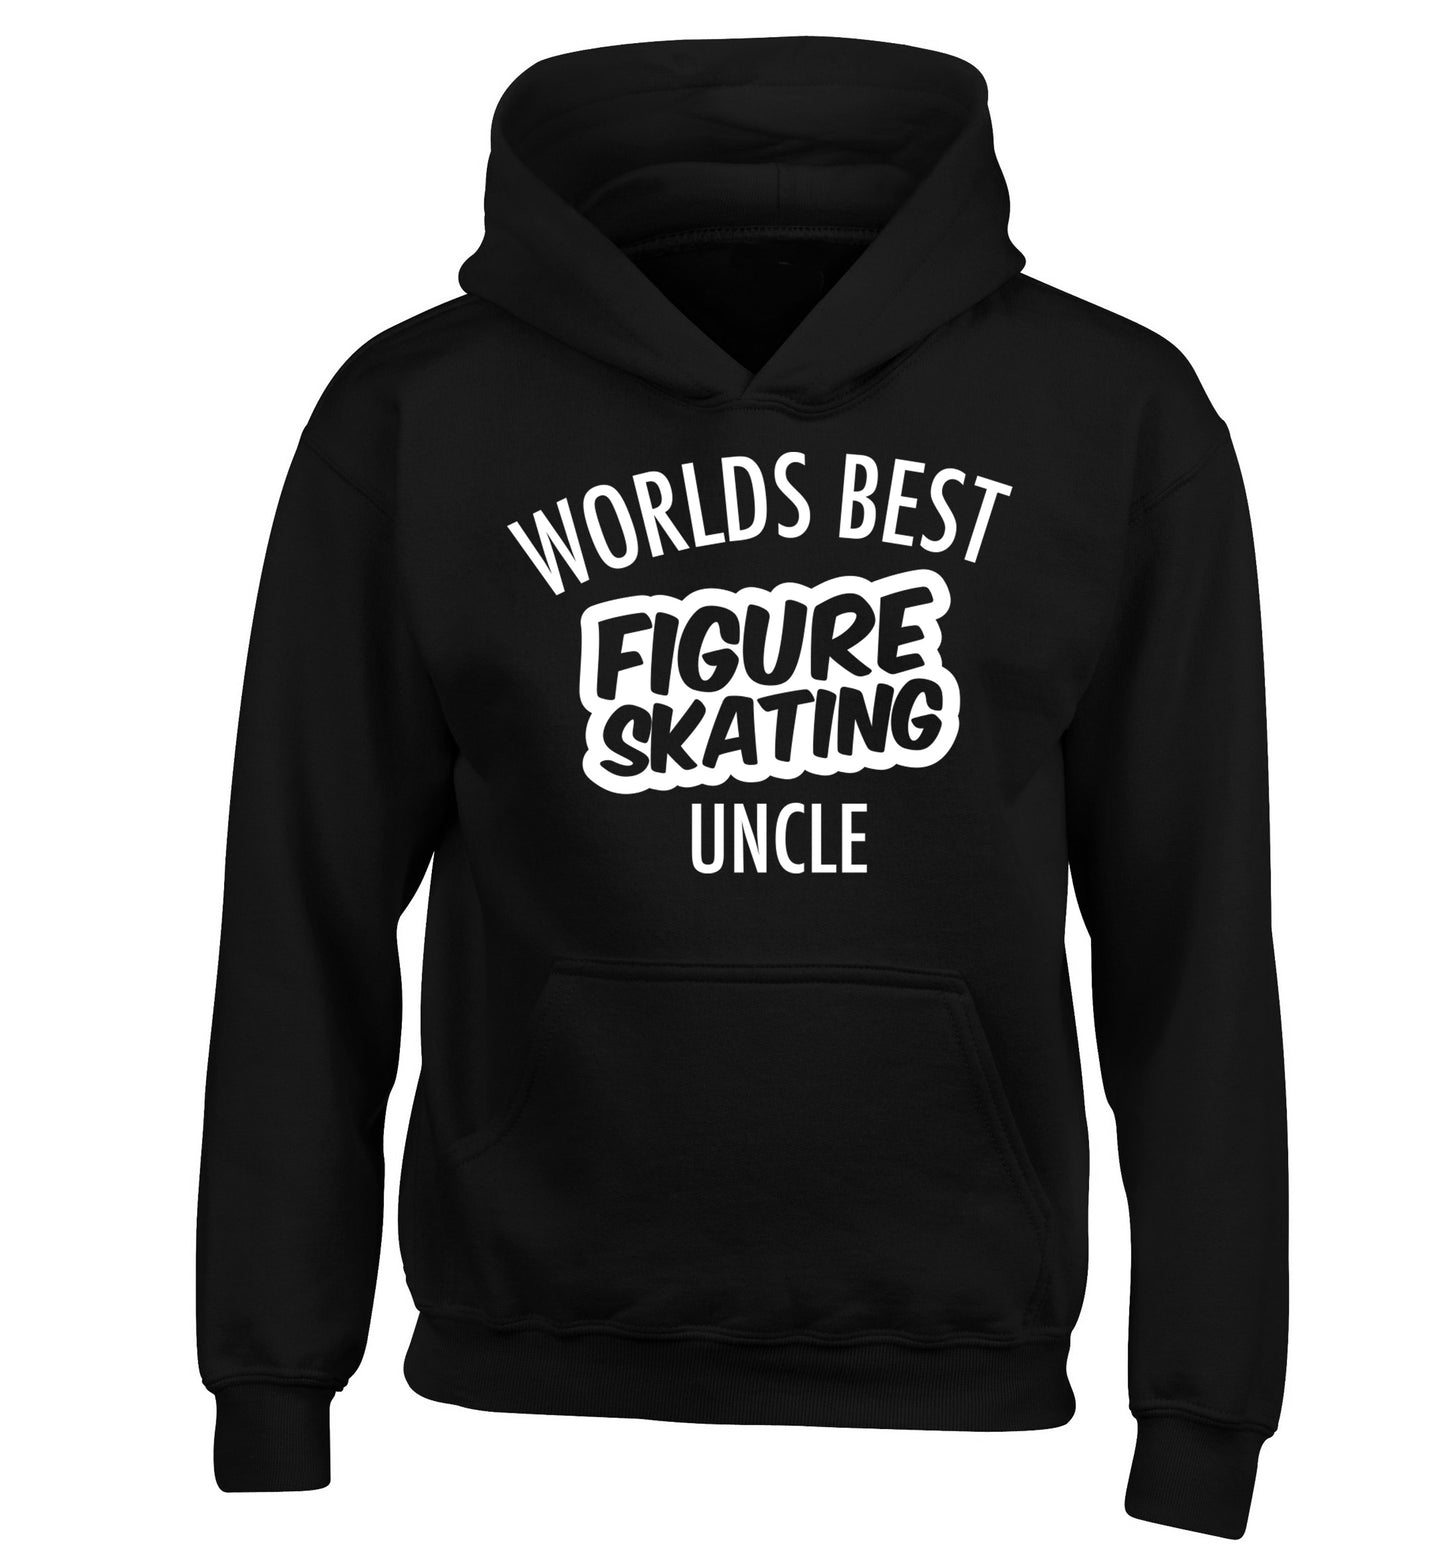 Worlds best figure skating uncle children's black hoodie 12-14 Years